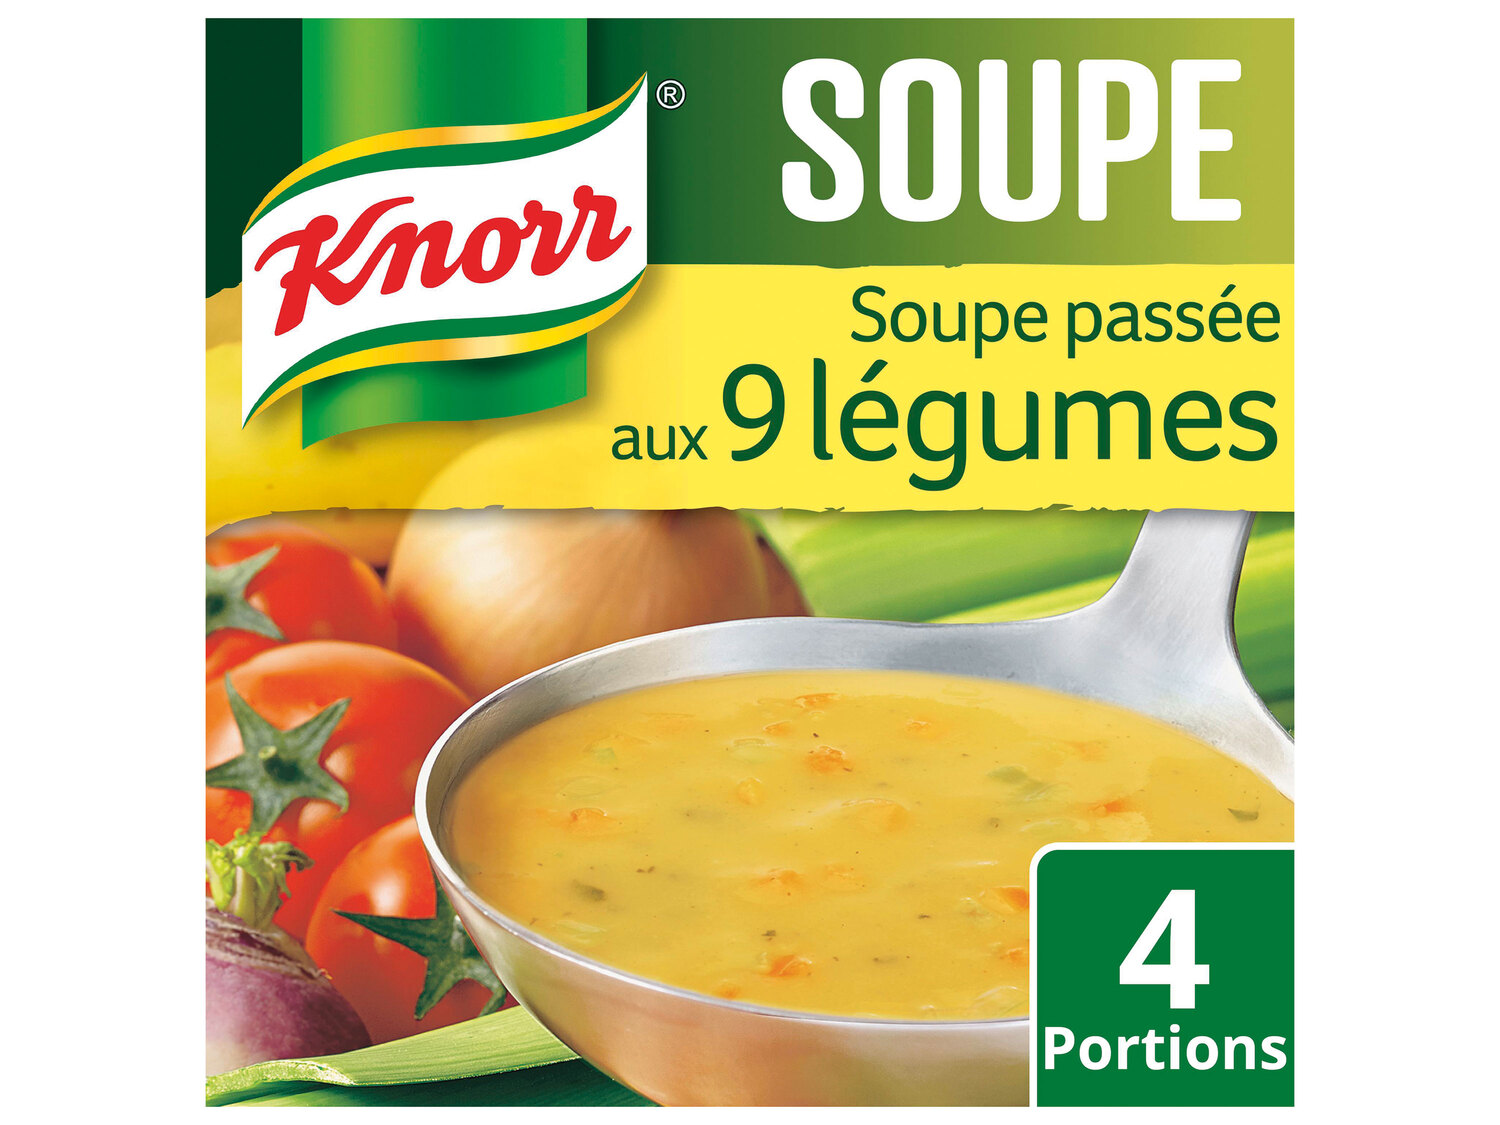 Knorr soupes déshydratées , le prix 0.59 € 
- Le sachet de 84/105/112 g : 0,89 ...